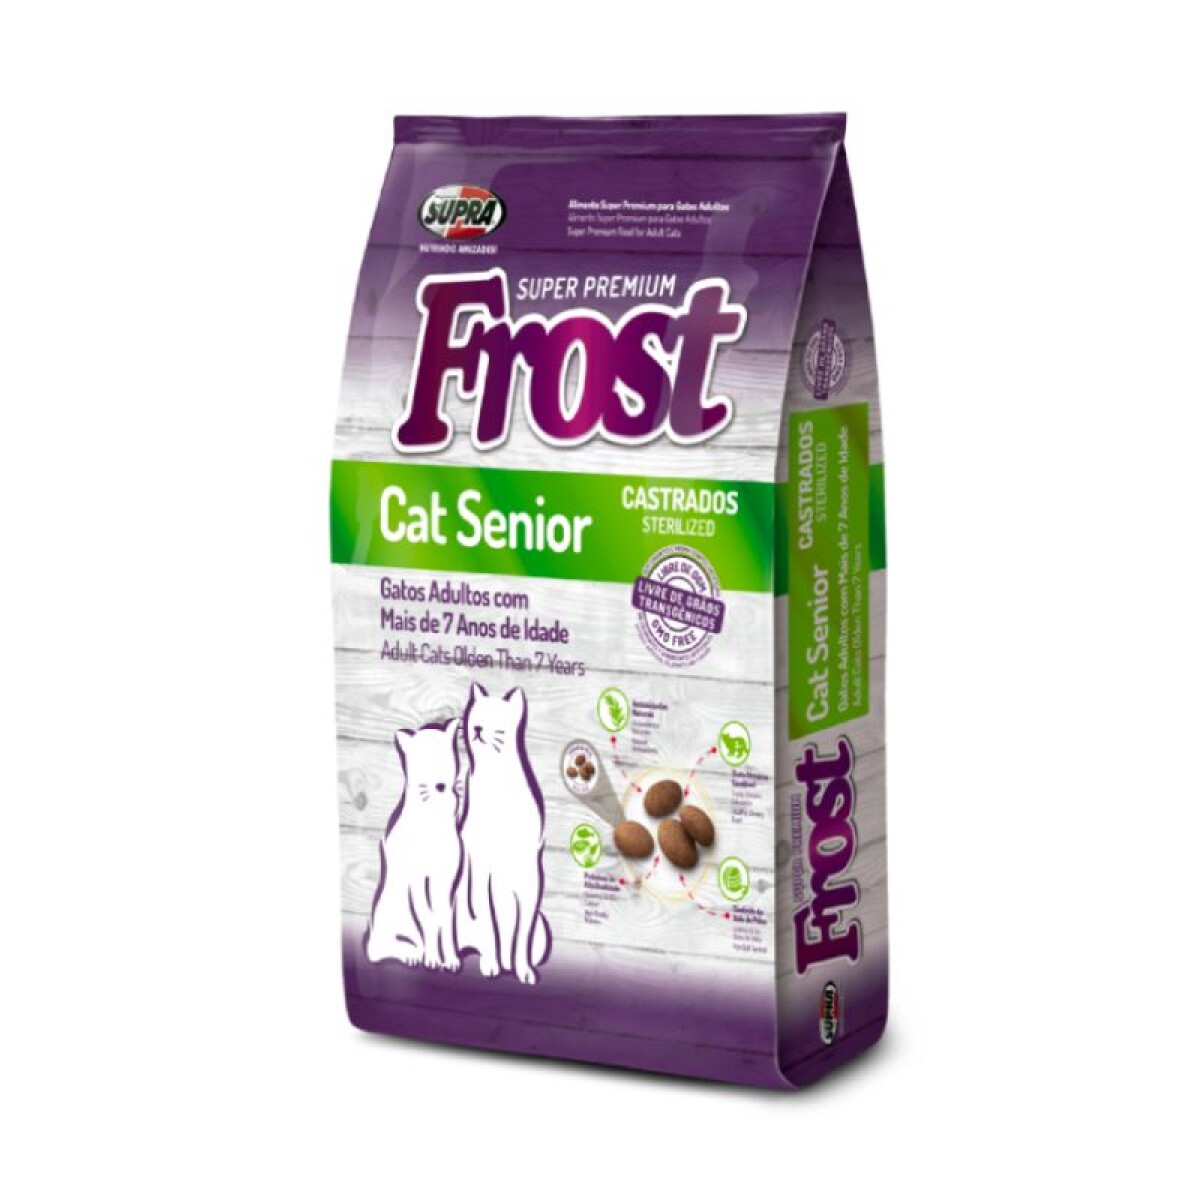 FROST CAT SENIOR X 1.5 KG - Frost Cat Senior X 1.5 Kg 